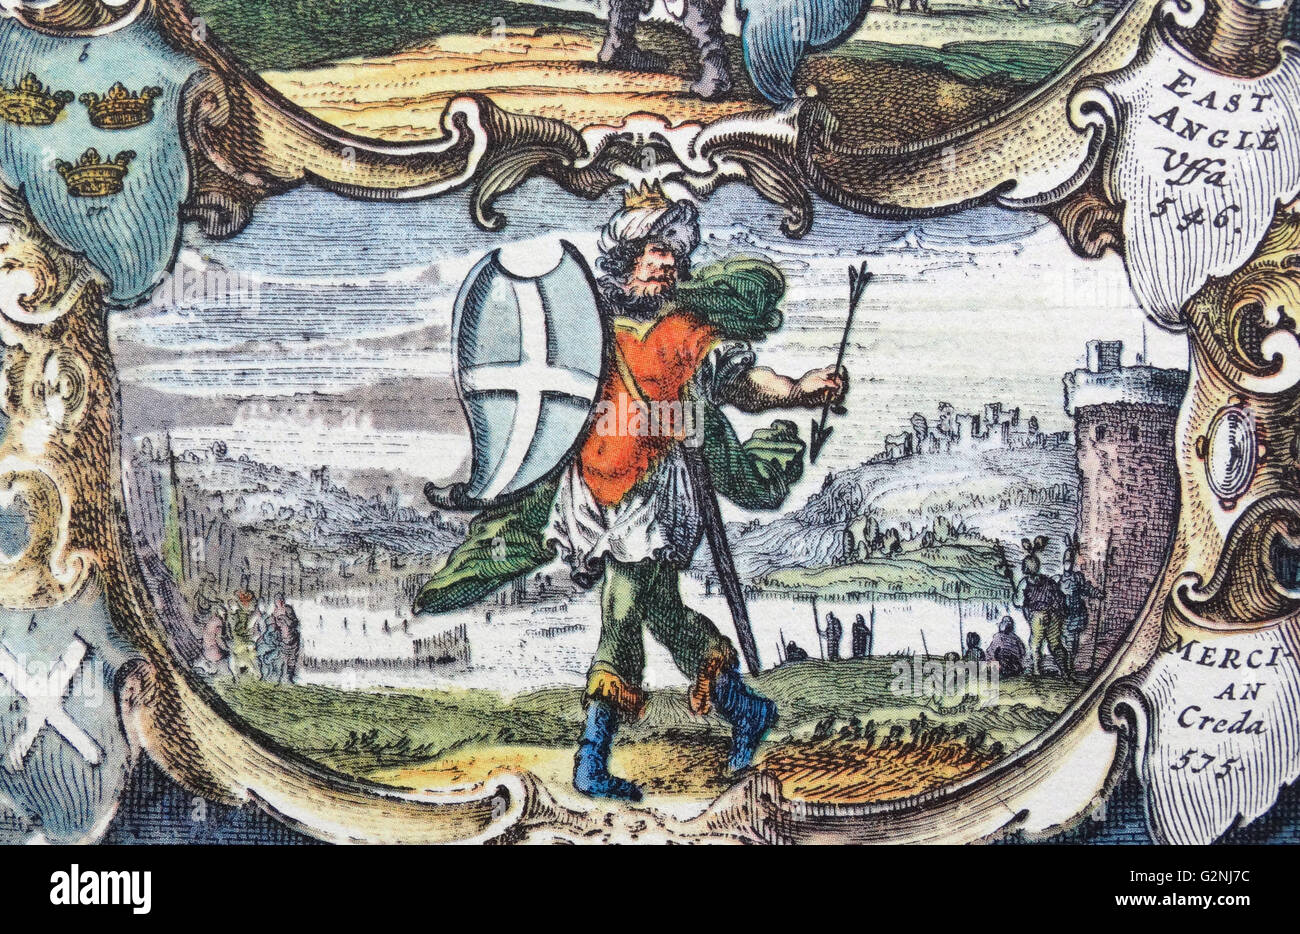 (Creoda Cryda oder Cryda, 6.Jh.) mag der erste König des angelsächsischen Königreichs Mercia gewesen. Das Königreich Mercia war ein Zustand in den englischen Midlands Vom 6. Jahrhundert bis zum 10.. Detail aus einem antiken Karte von Großbritannien, von der holländischen Kartographen Willem Blaeu Atlas Novus (Amsterdam 1635) Stockfoto